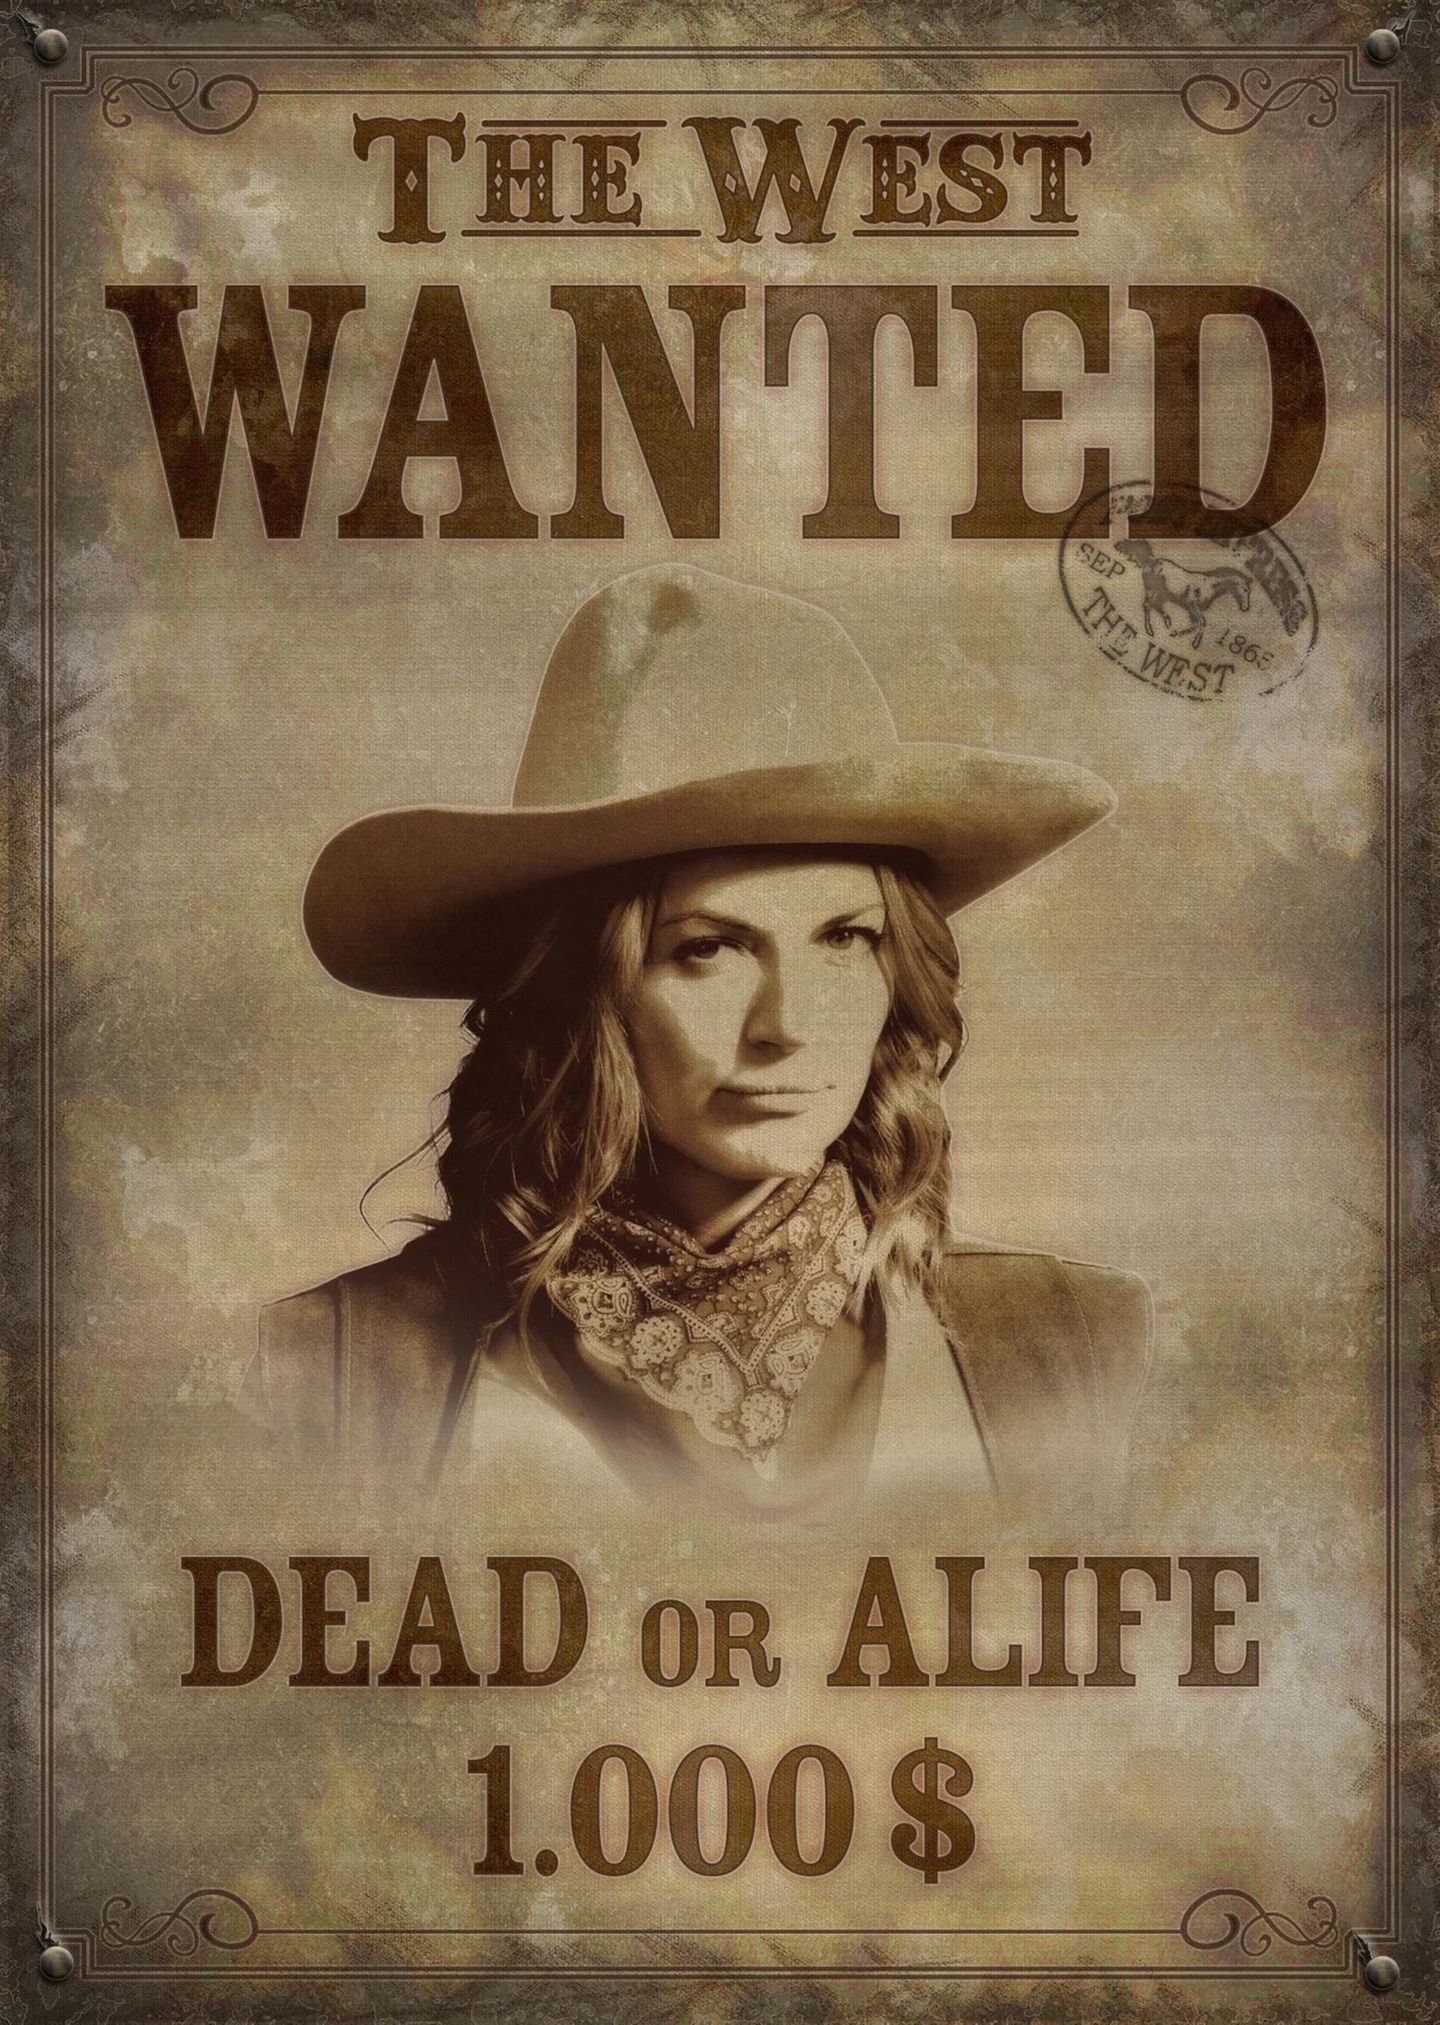 Serienstar Nina Bott mimt im Onlinerollenspiel "The West" ein Cowgirl.